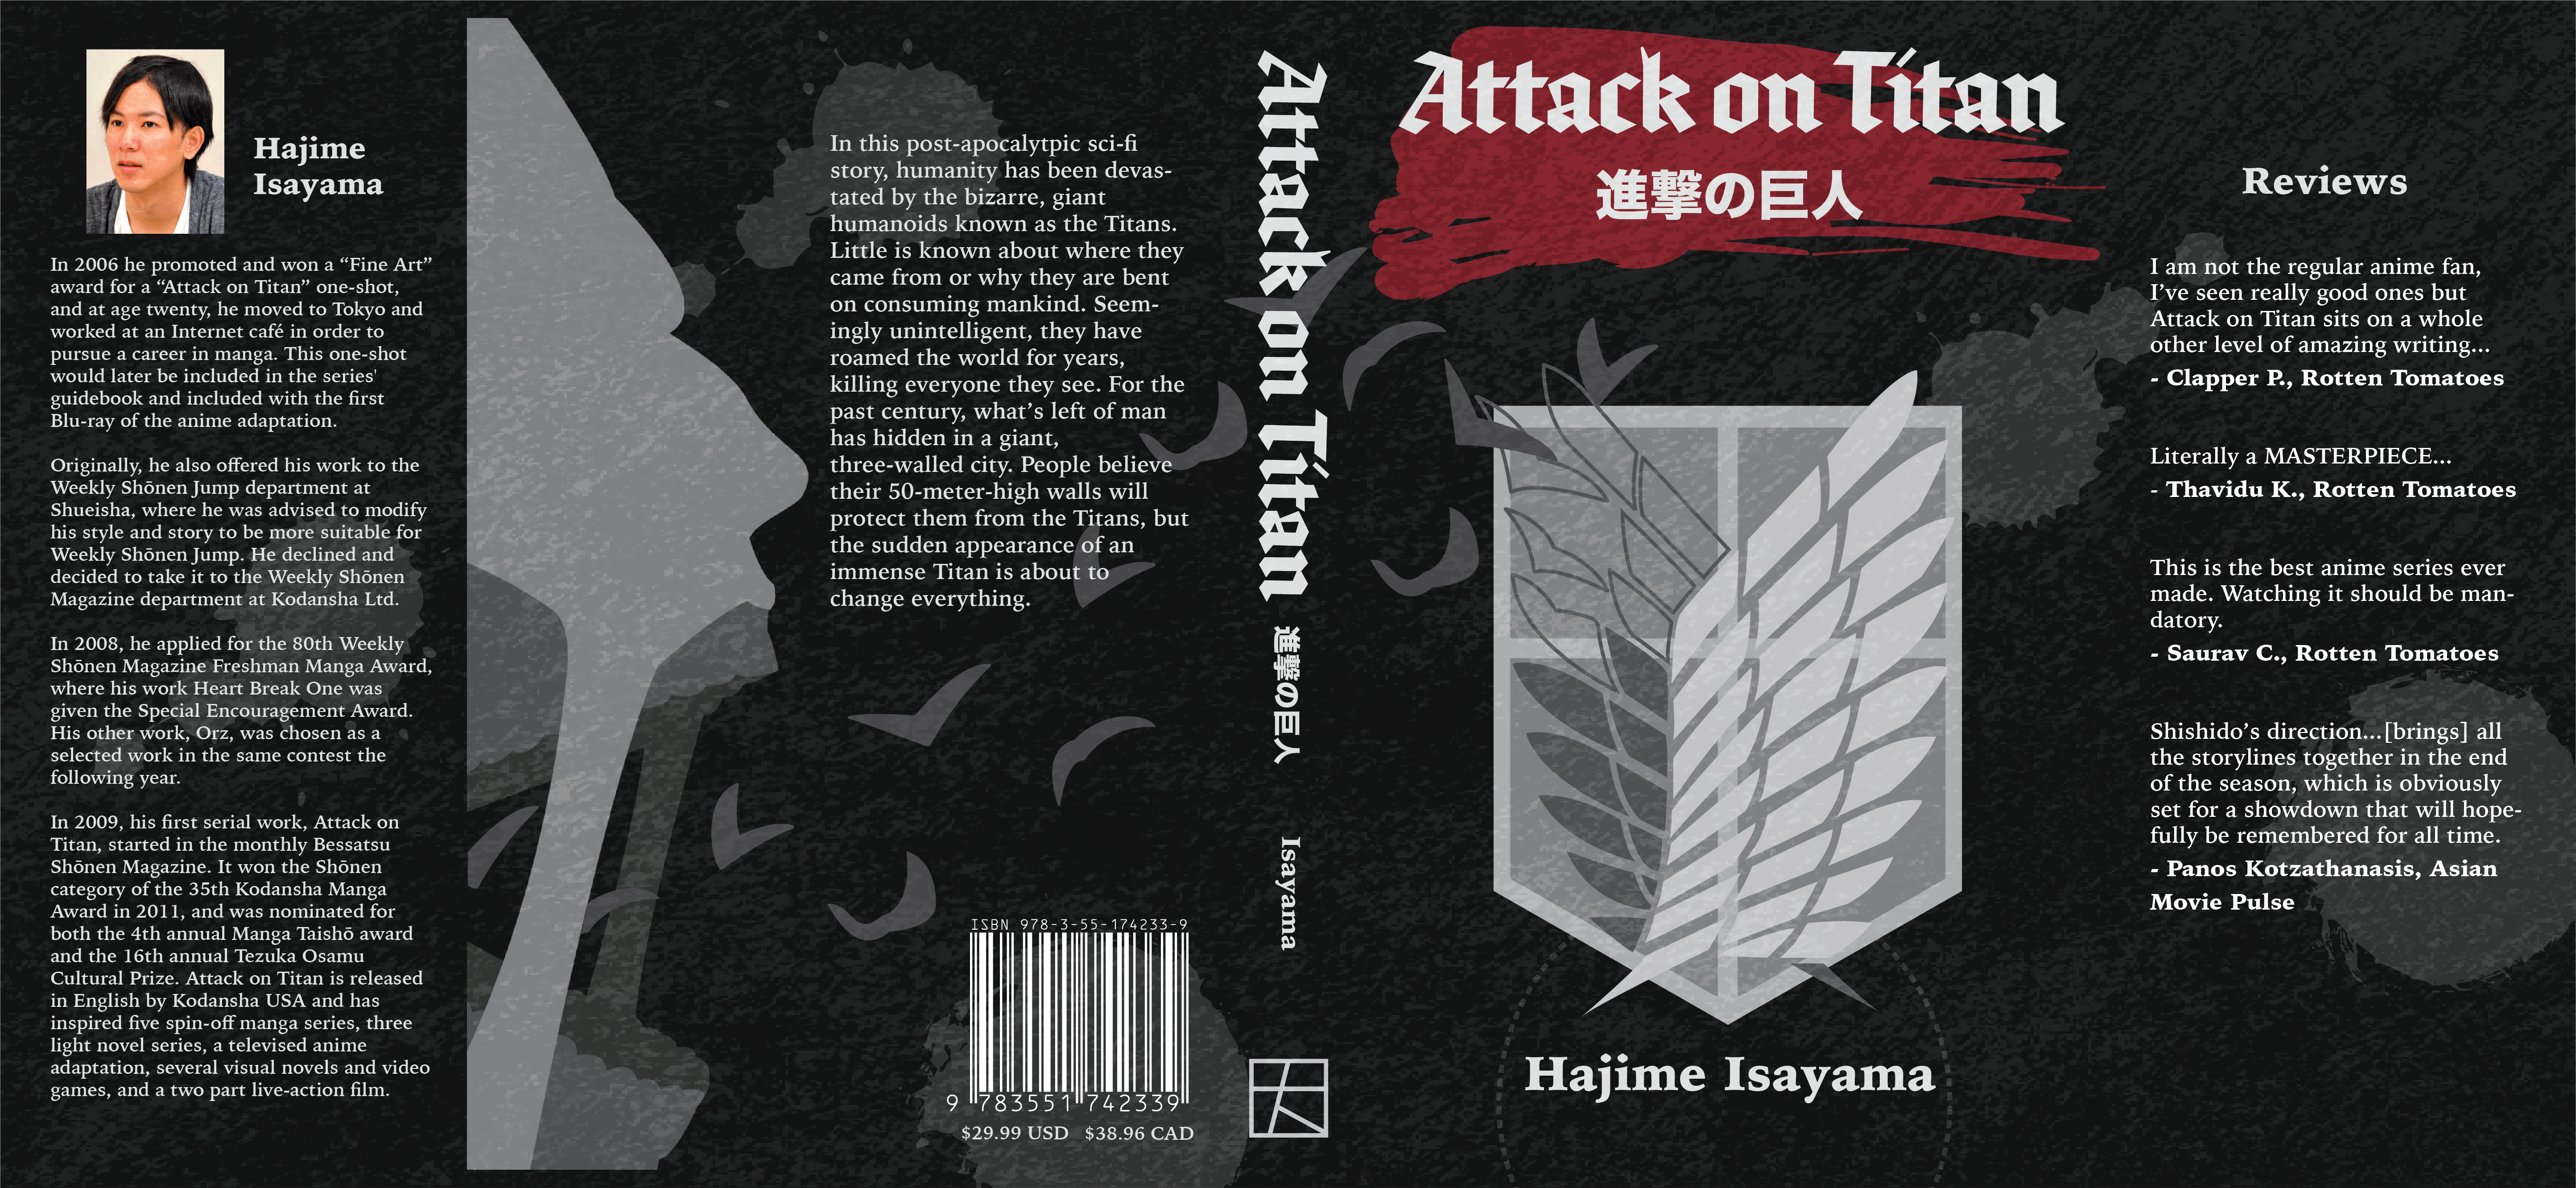 Attack on Titan book cover